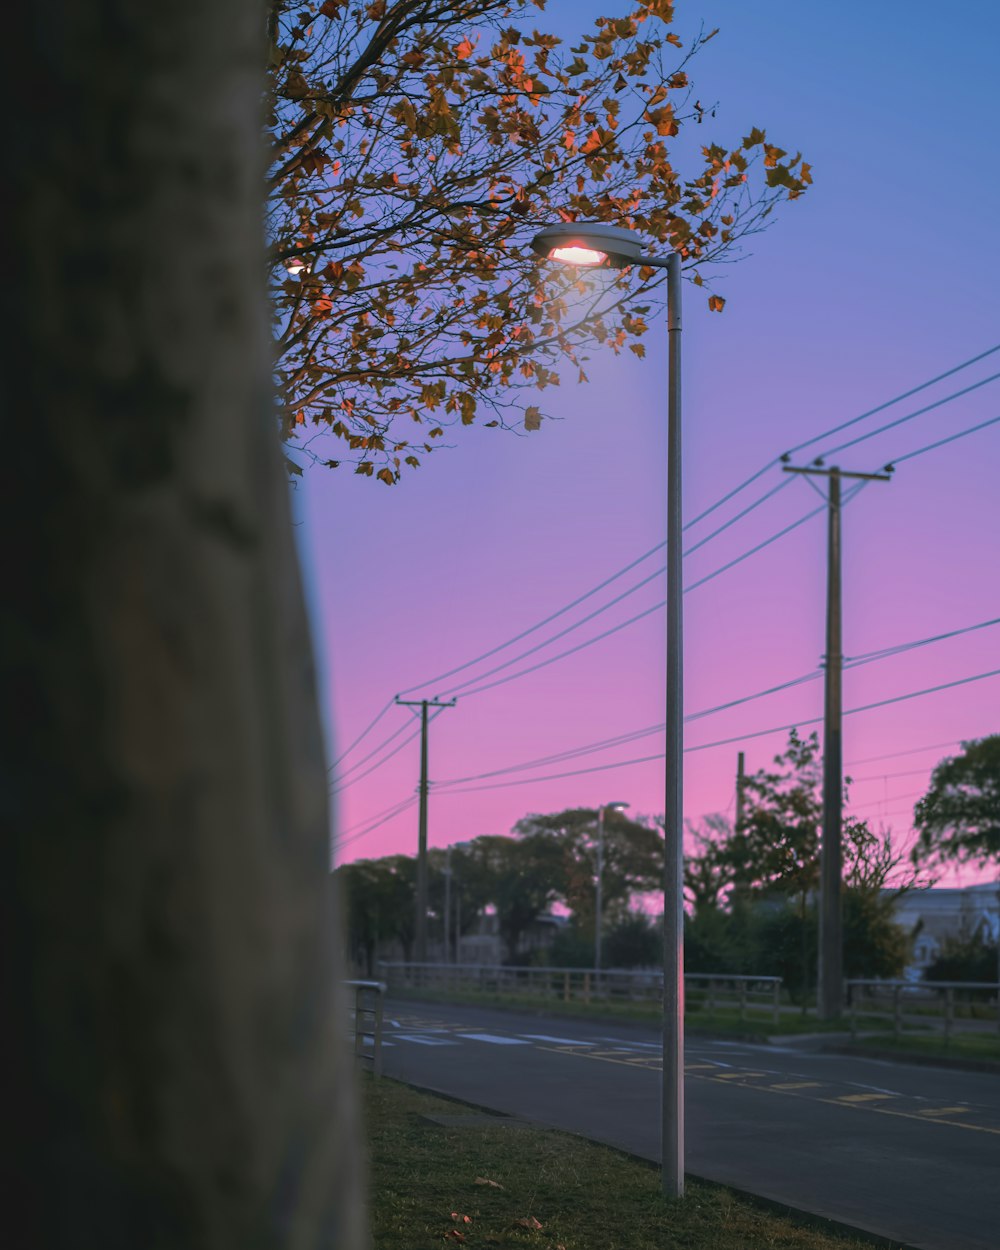 a street light on a street